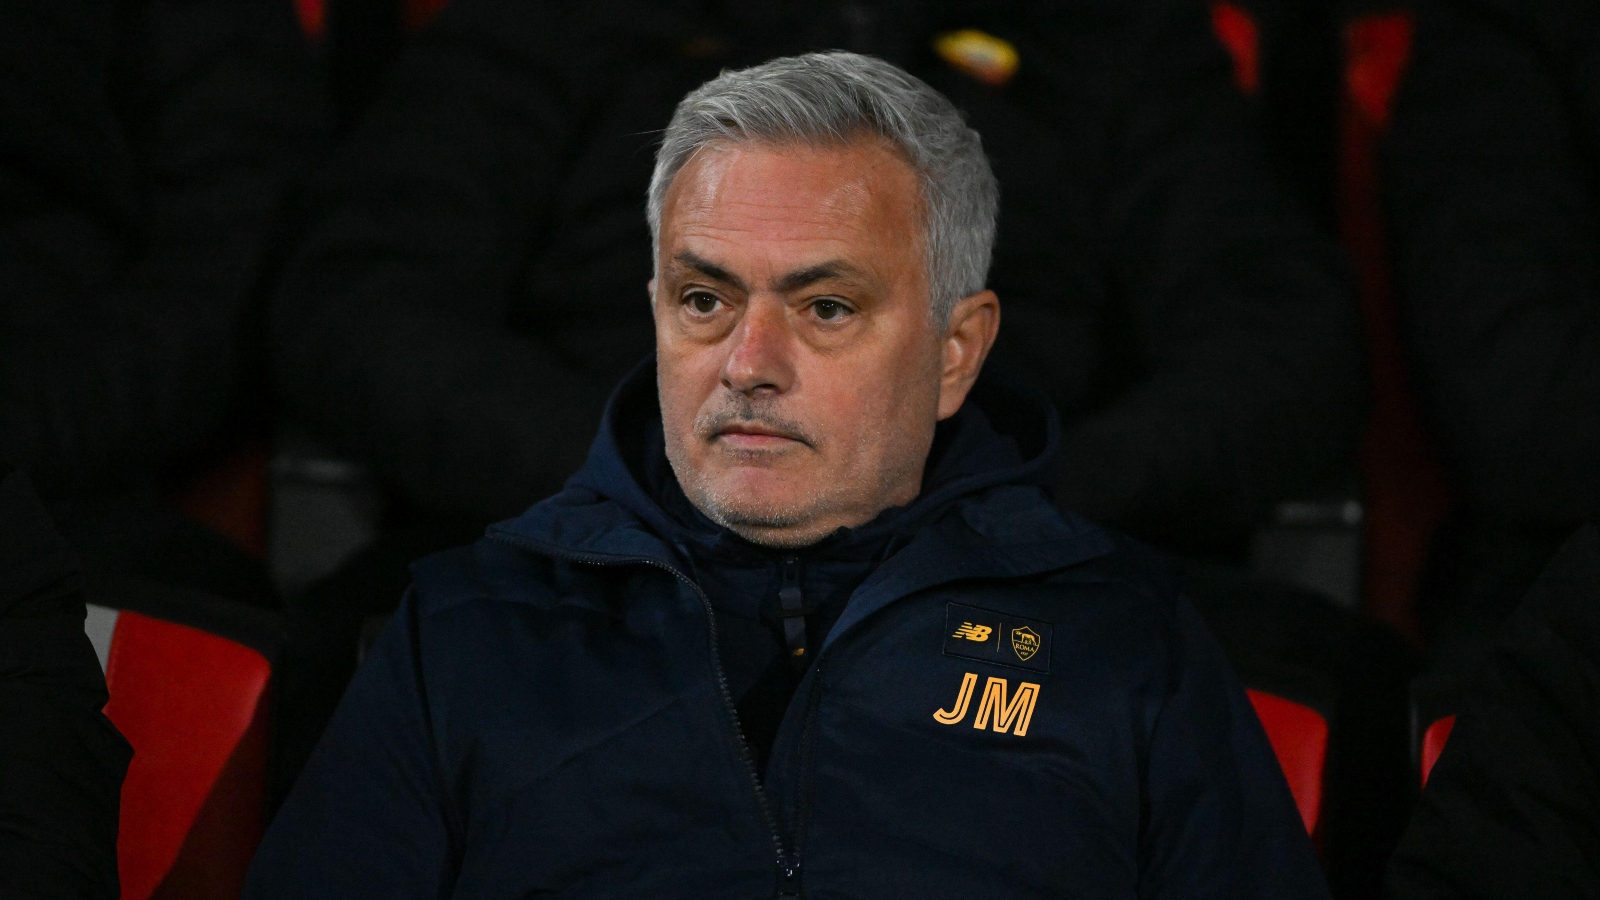 José Mourinho, sancionado y multado tras incidente con árbitro tras derrota de la Roma